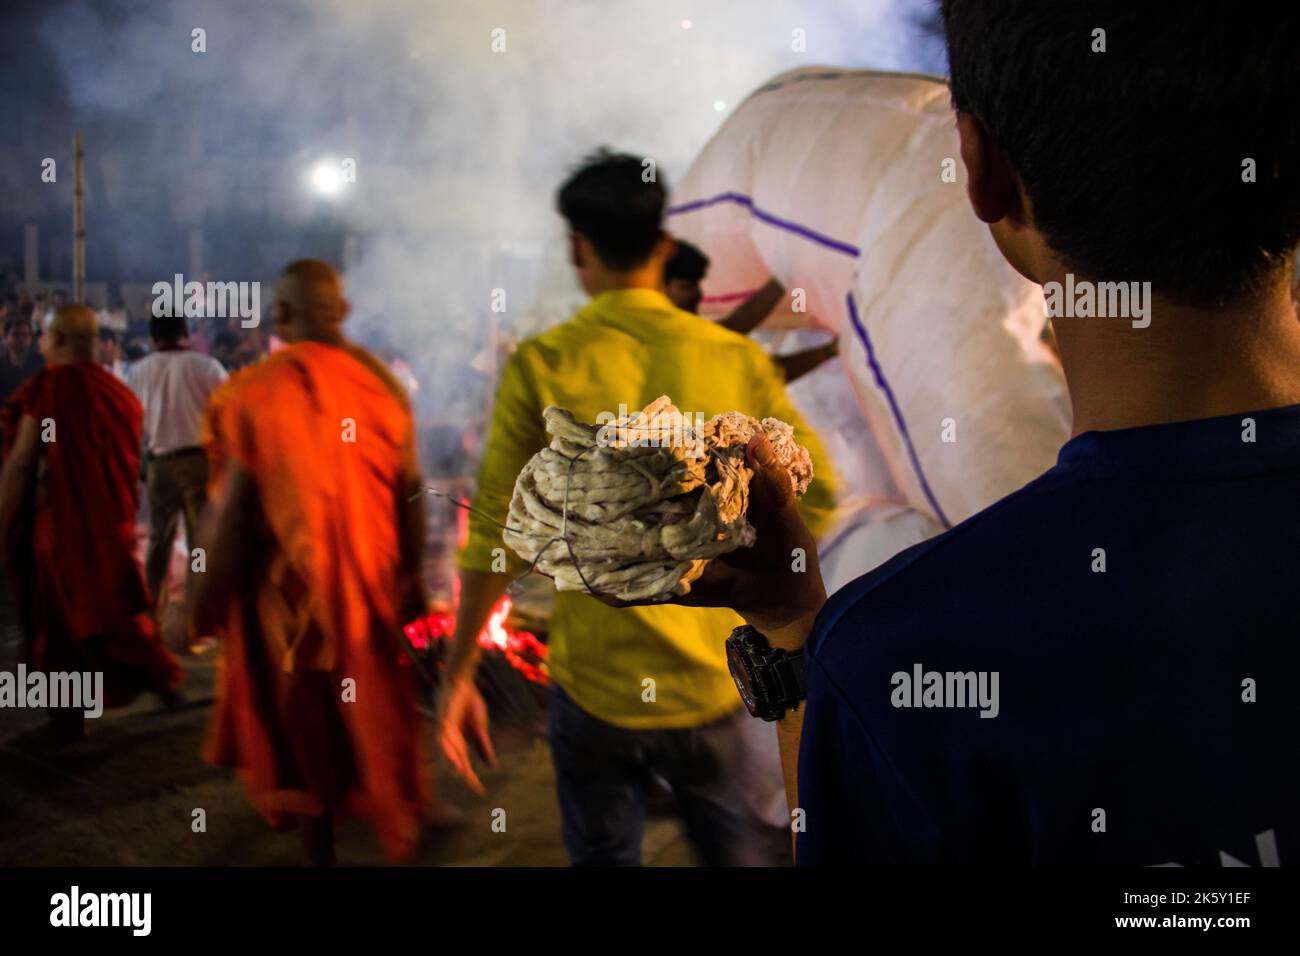 La fotografia candida delle Lanterne è stata rilasciata durante il festival di Probarona Purnima al tempio buddista di Mukda, Dhaka, Bangladesh. Questa immagine era captur Foto Stock